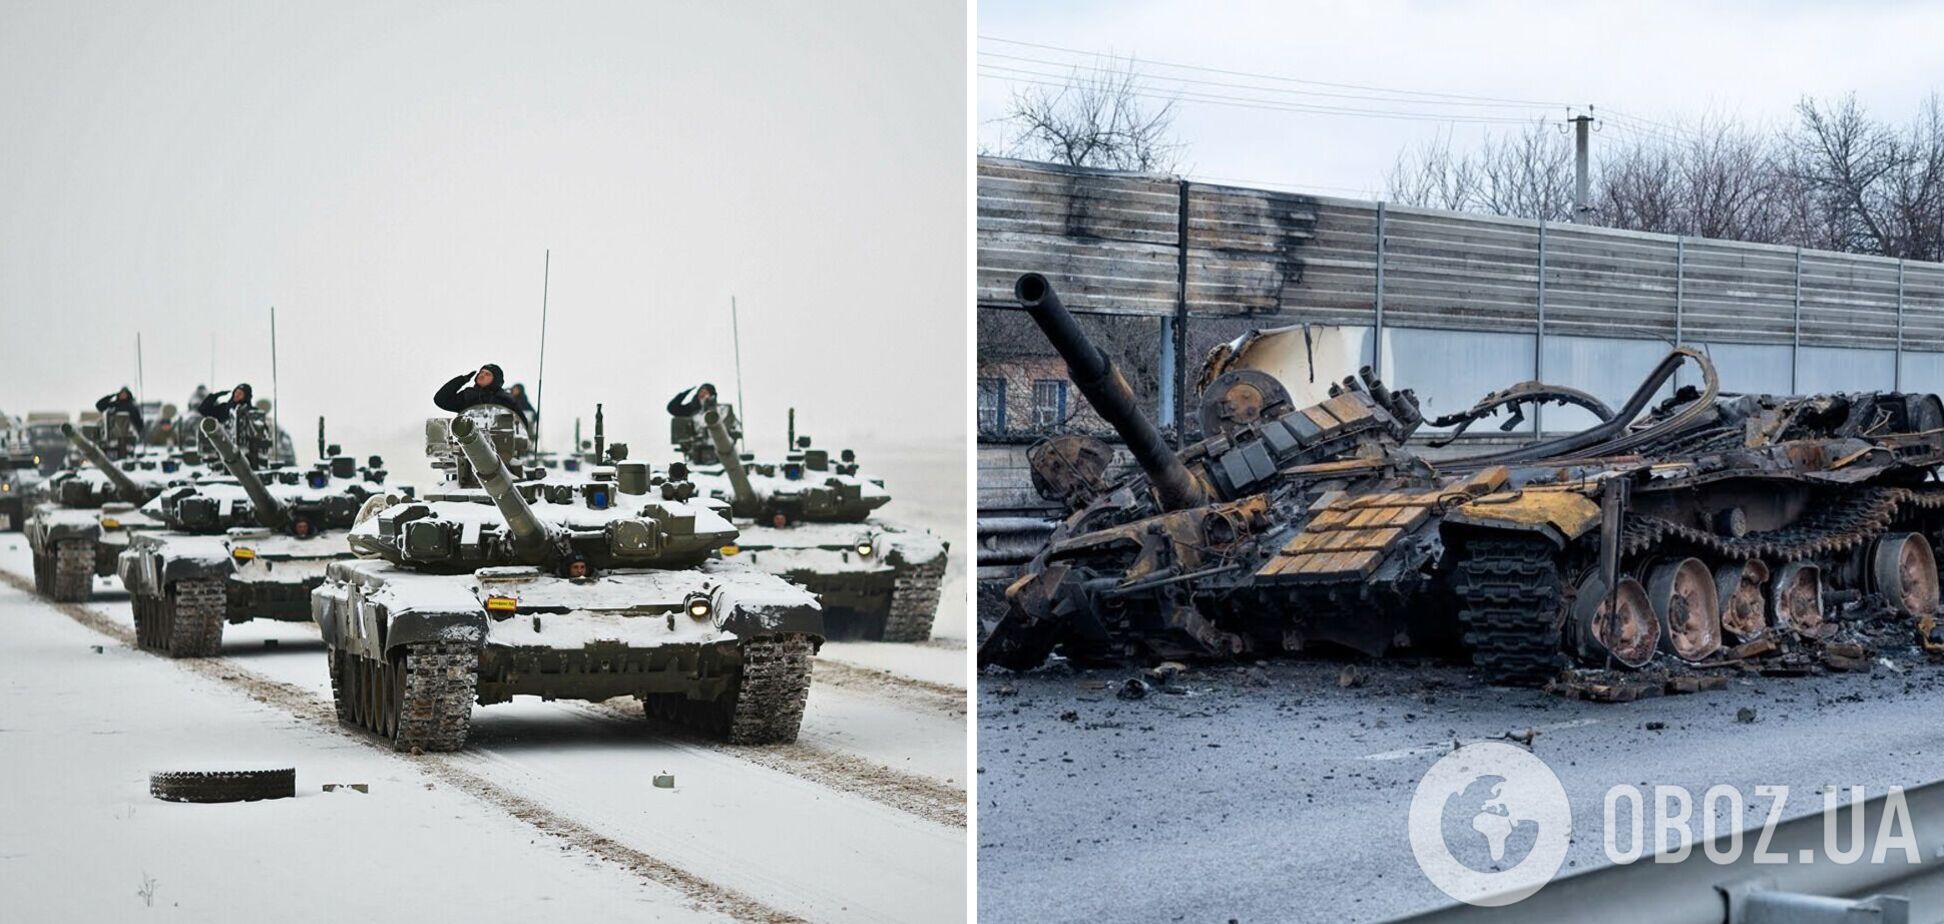 'Один танк залишився у полку!' Російські окупанти отримали відповідь під Маріуполем. Аудіоперехоплення